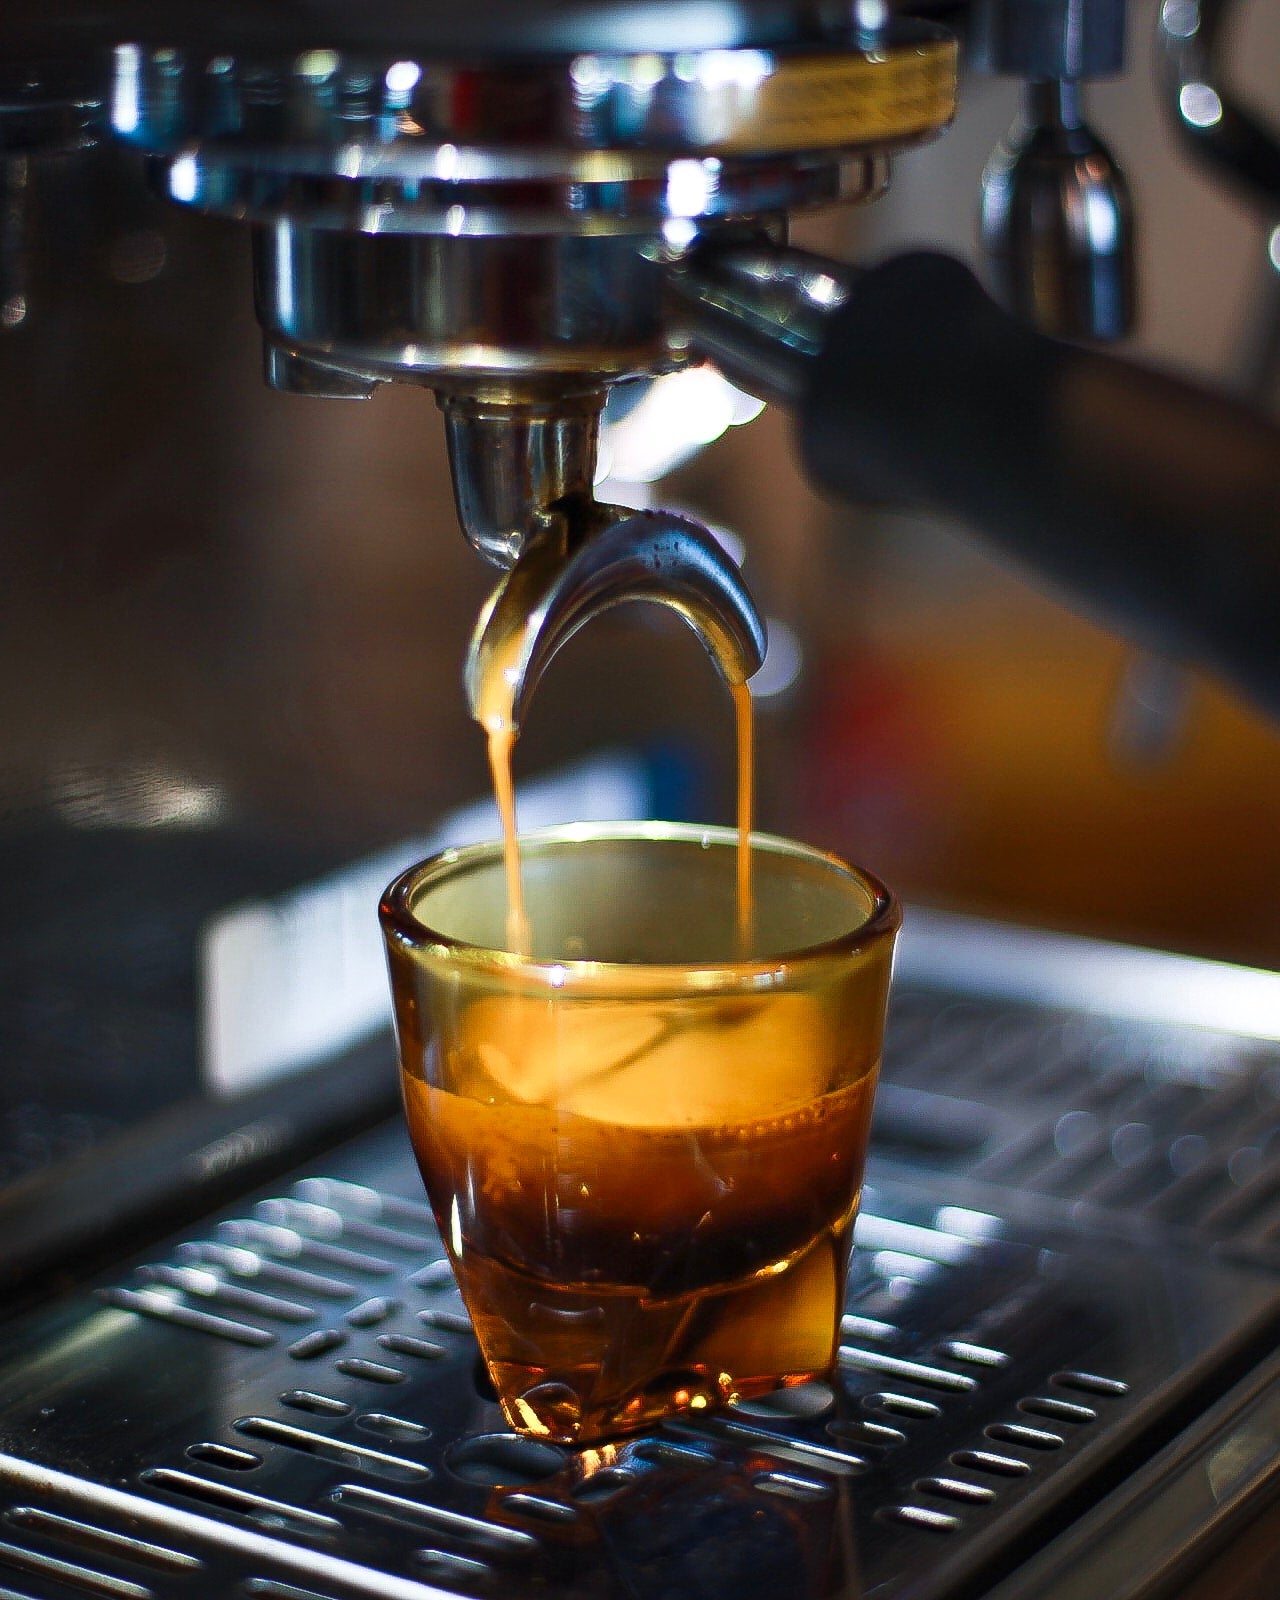 Espresso Shot - Chapeau! - Dawn Patrol – Domestique Coffee